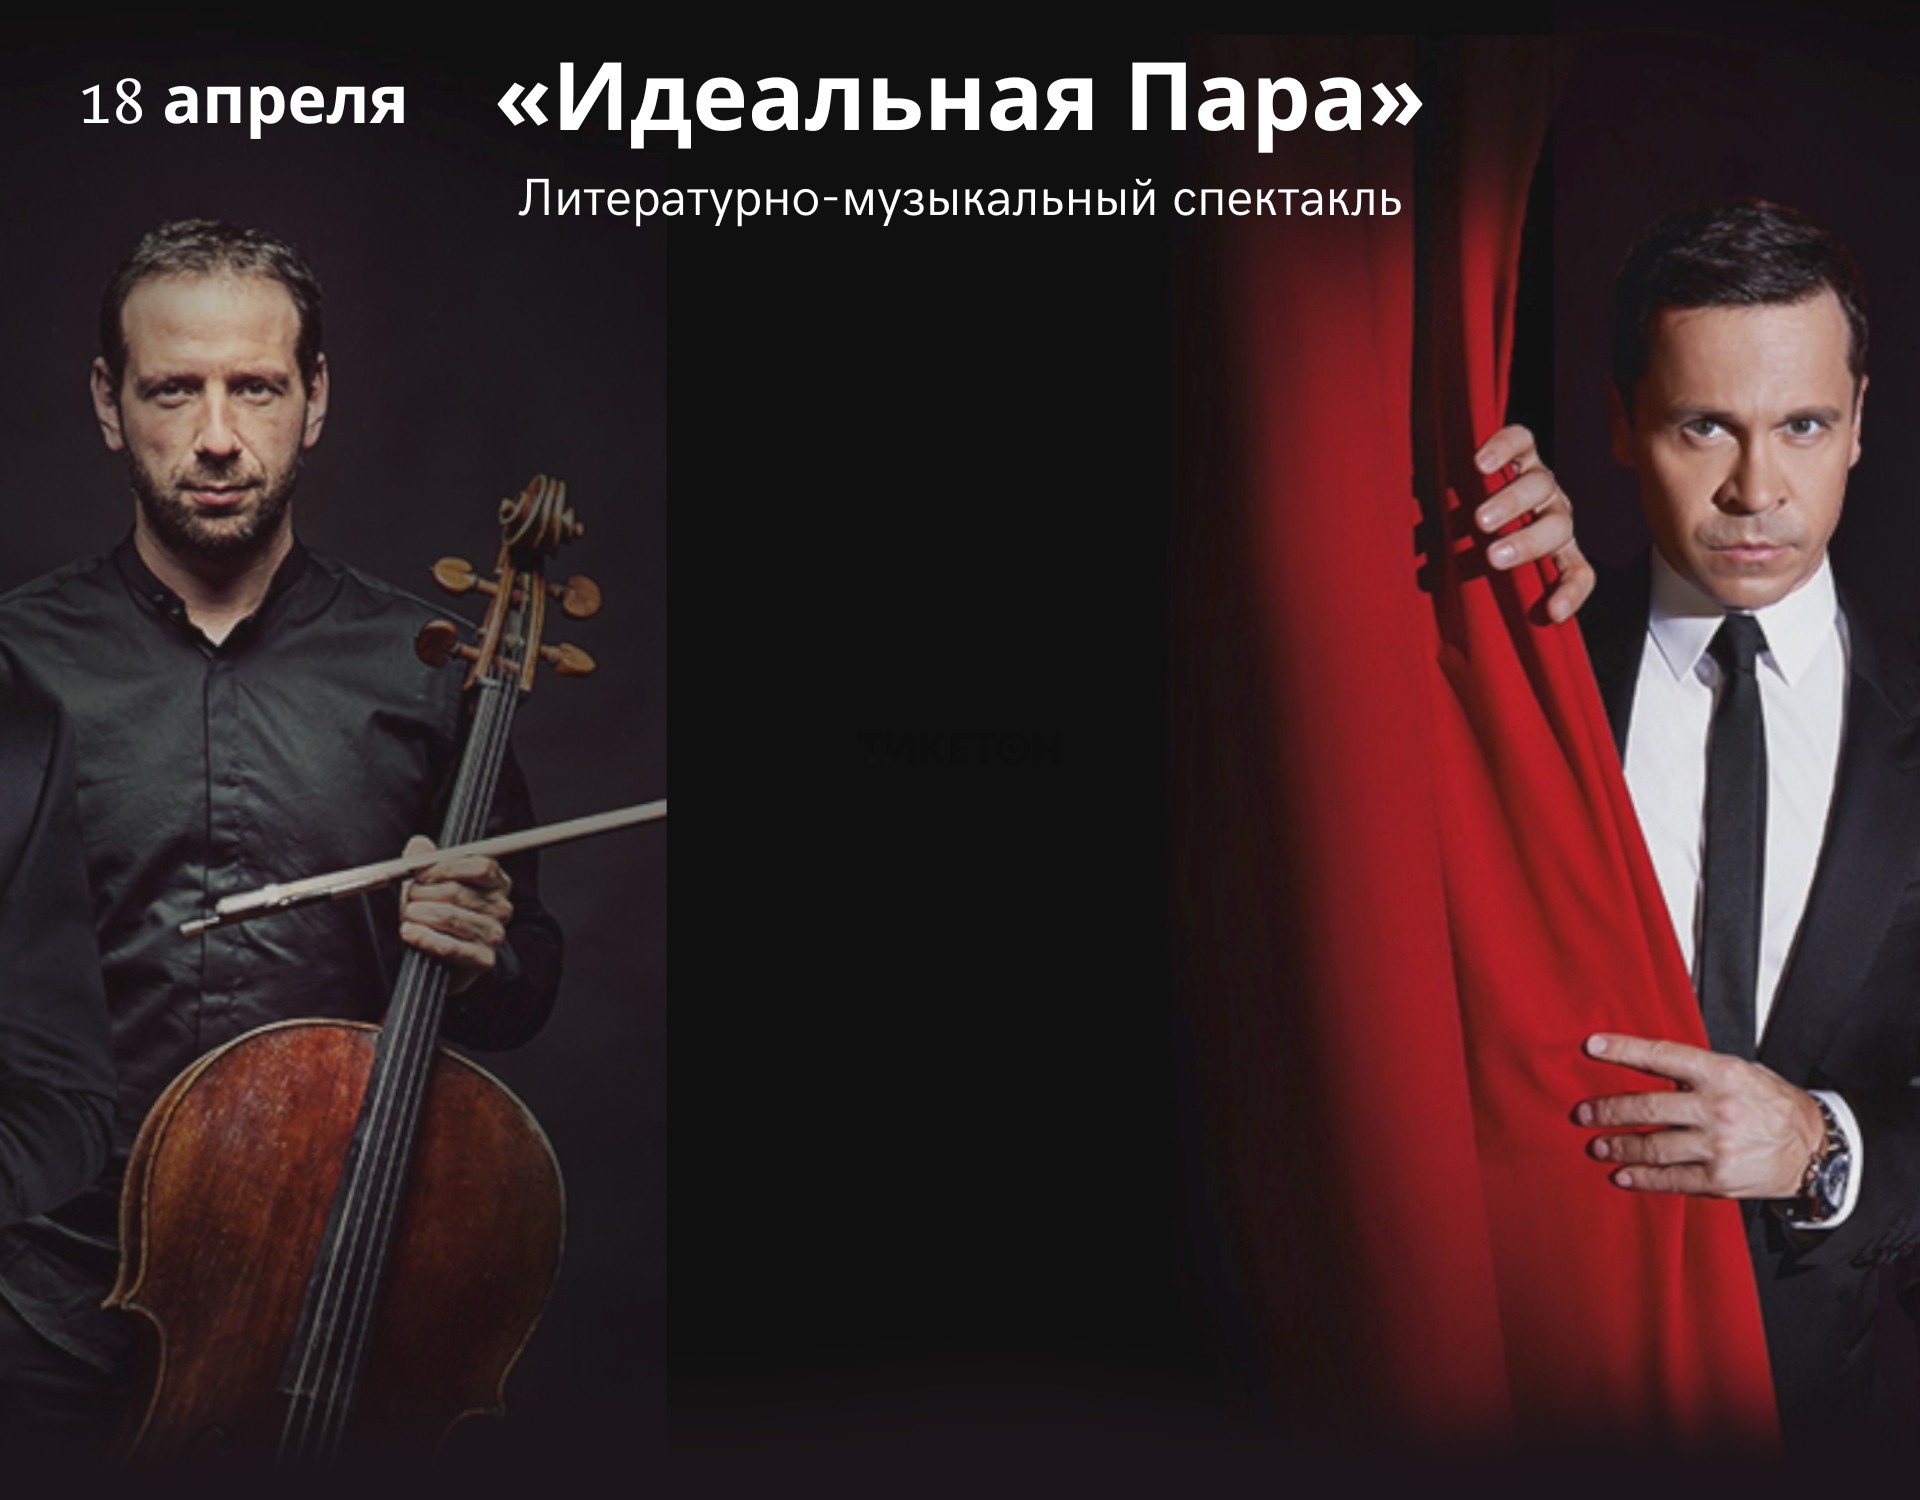 Литературно-музыкальный спектакль «Идеальная пара» в Алматы